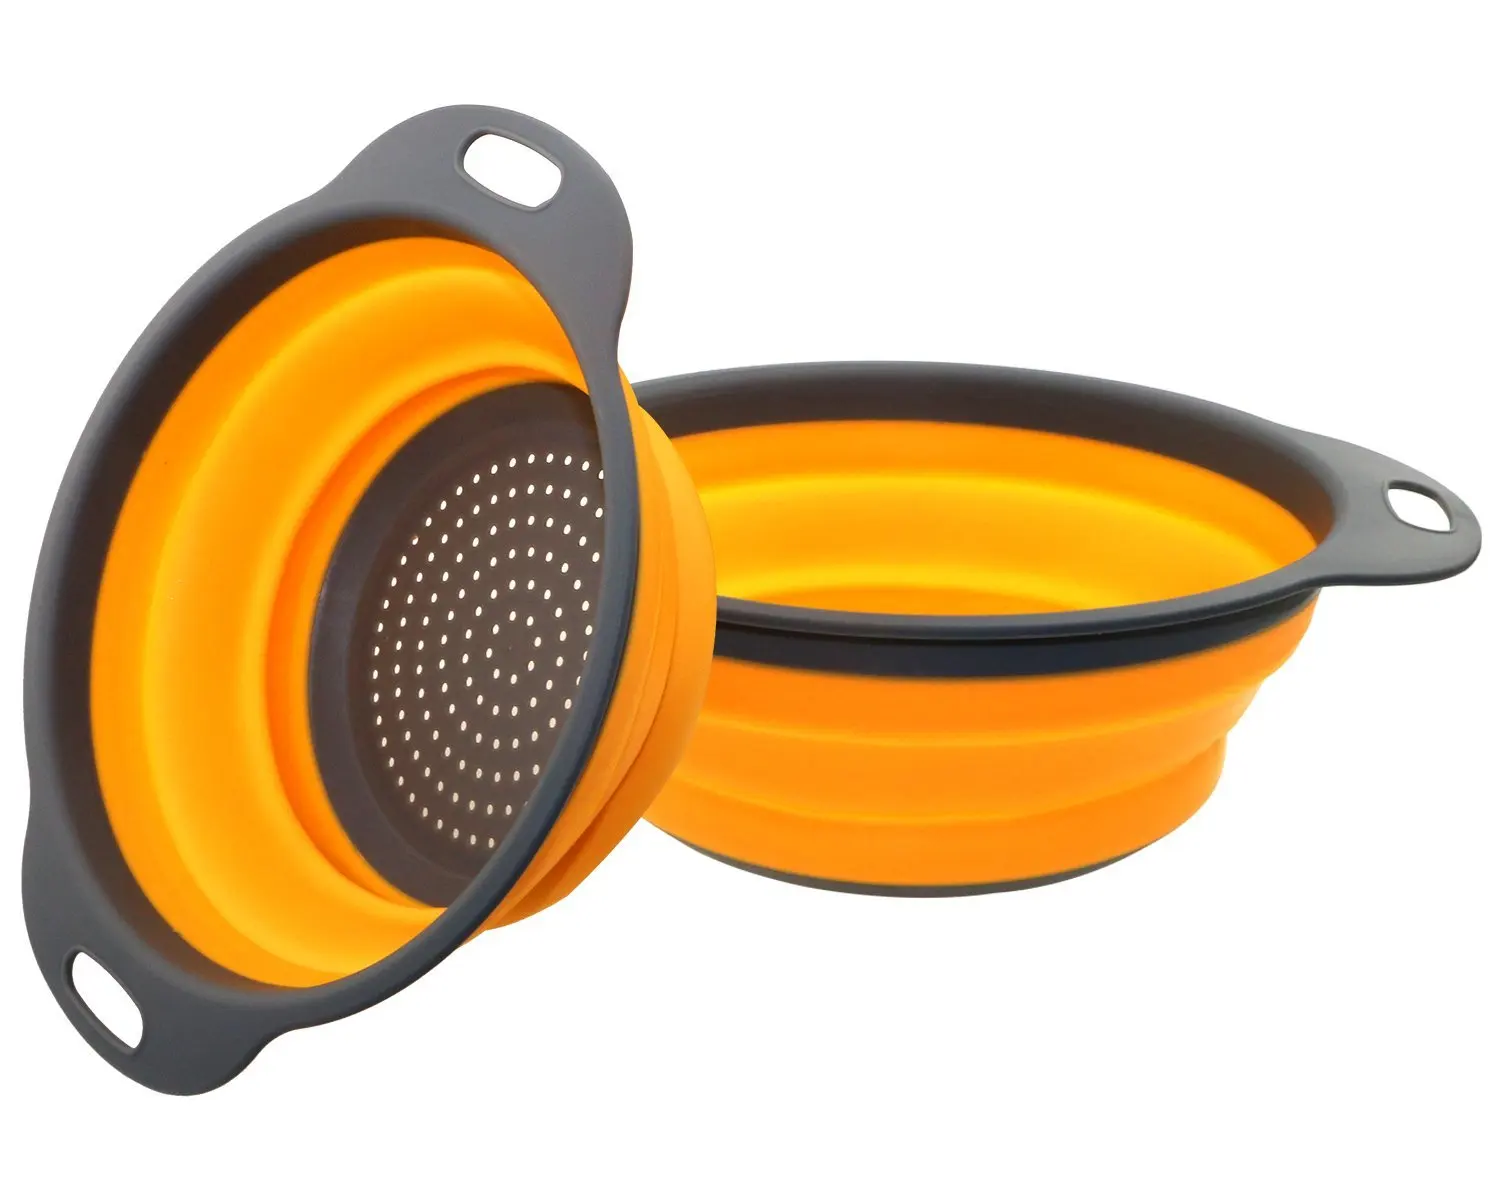 2 шт./компл. складной силиконовый дуршлаг фрукты овощи стиральная корзина Стрейнер складной осушитель ручка Кухня инструменты - Цвет: Orange